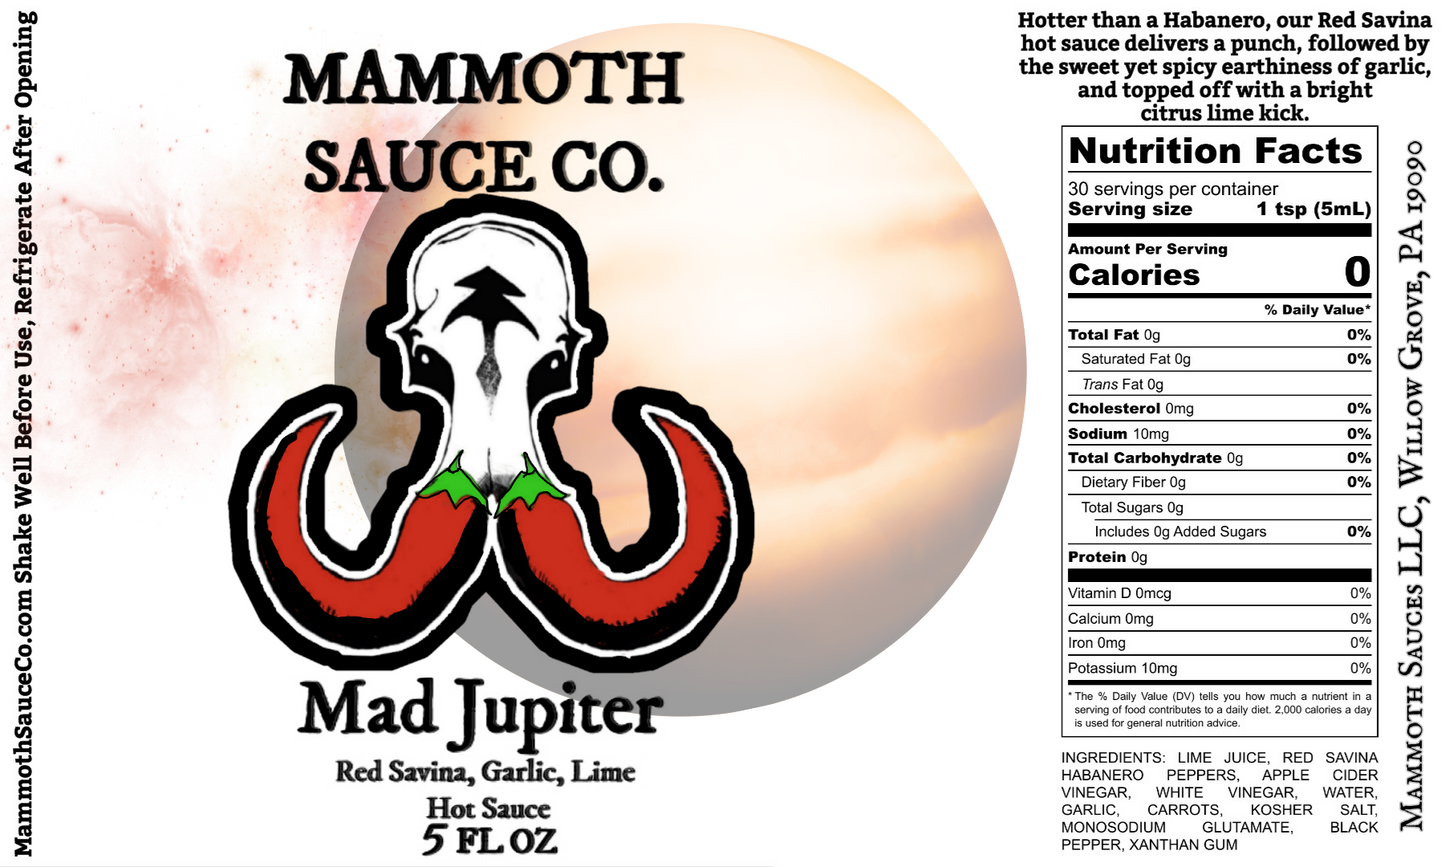 Mad Jupiter Hot Sauce